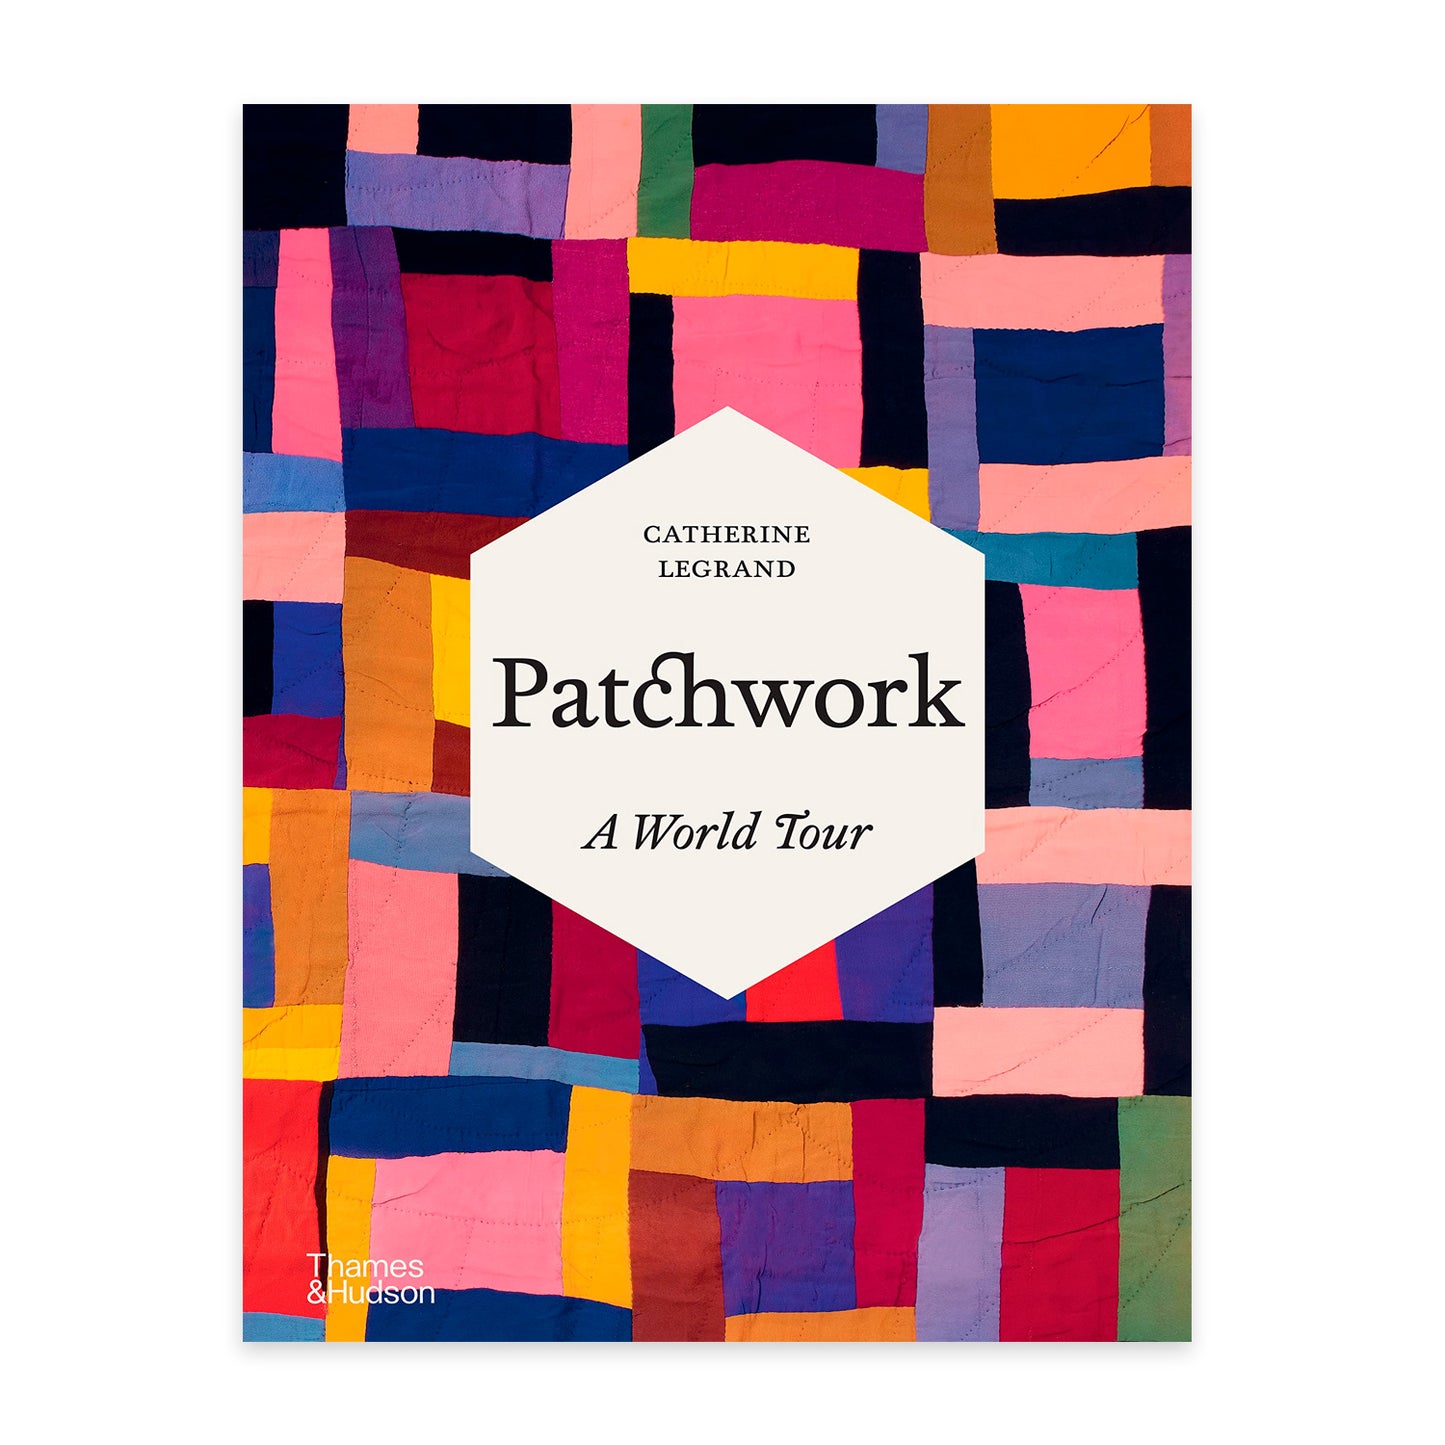 Patchwork: A World Tour